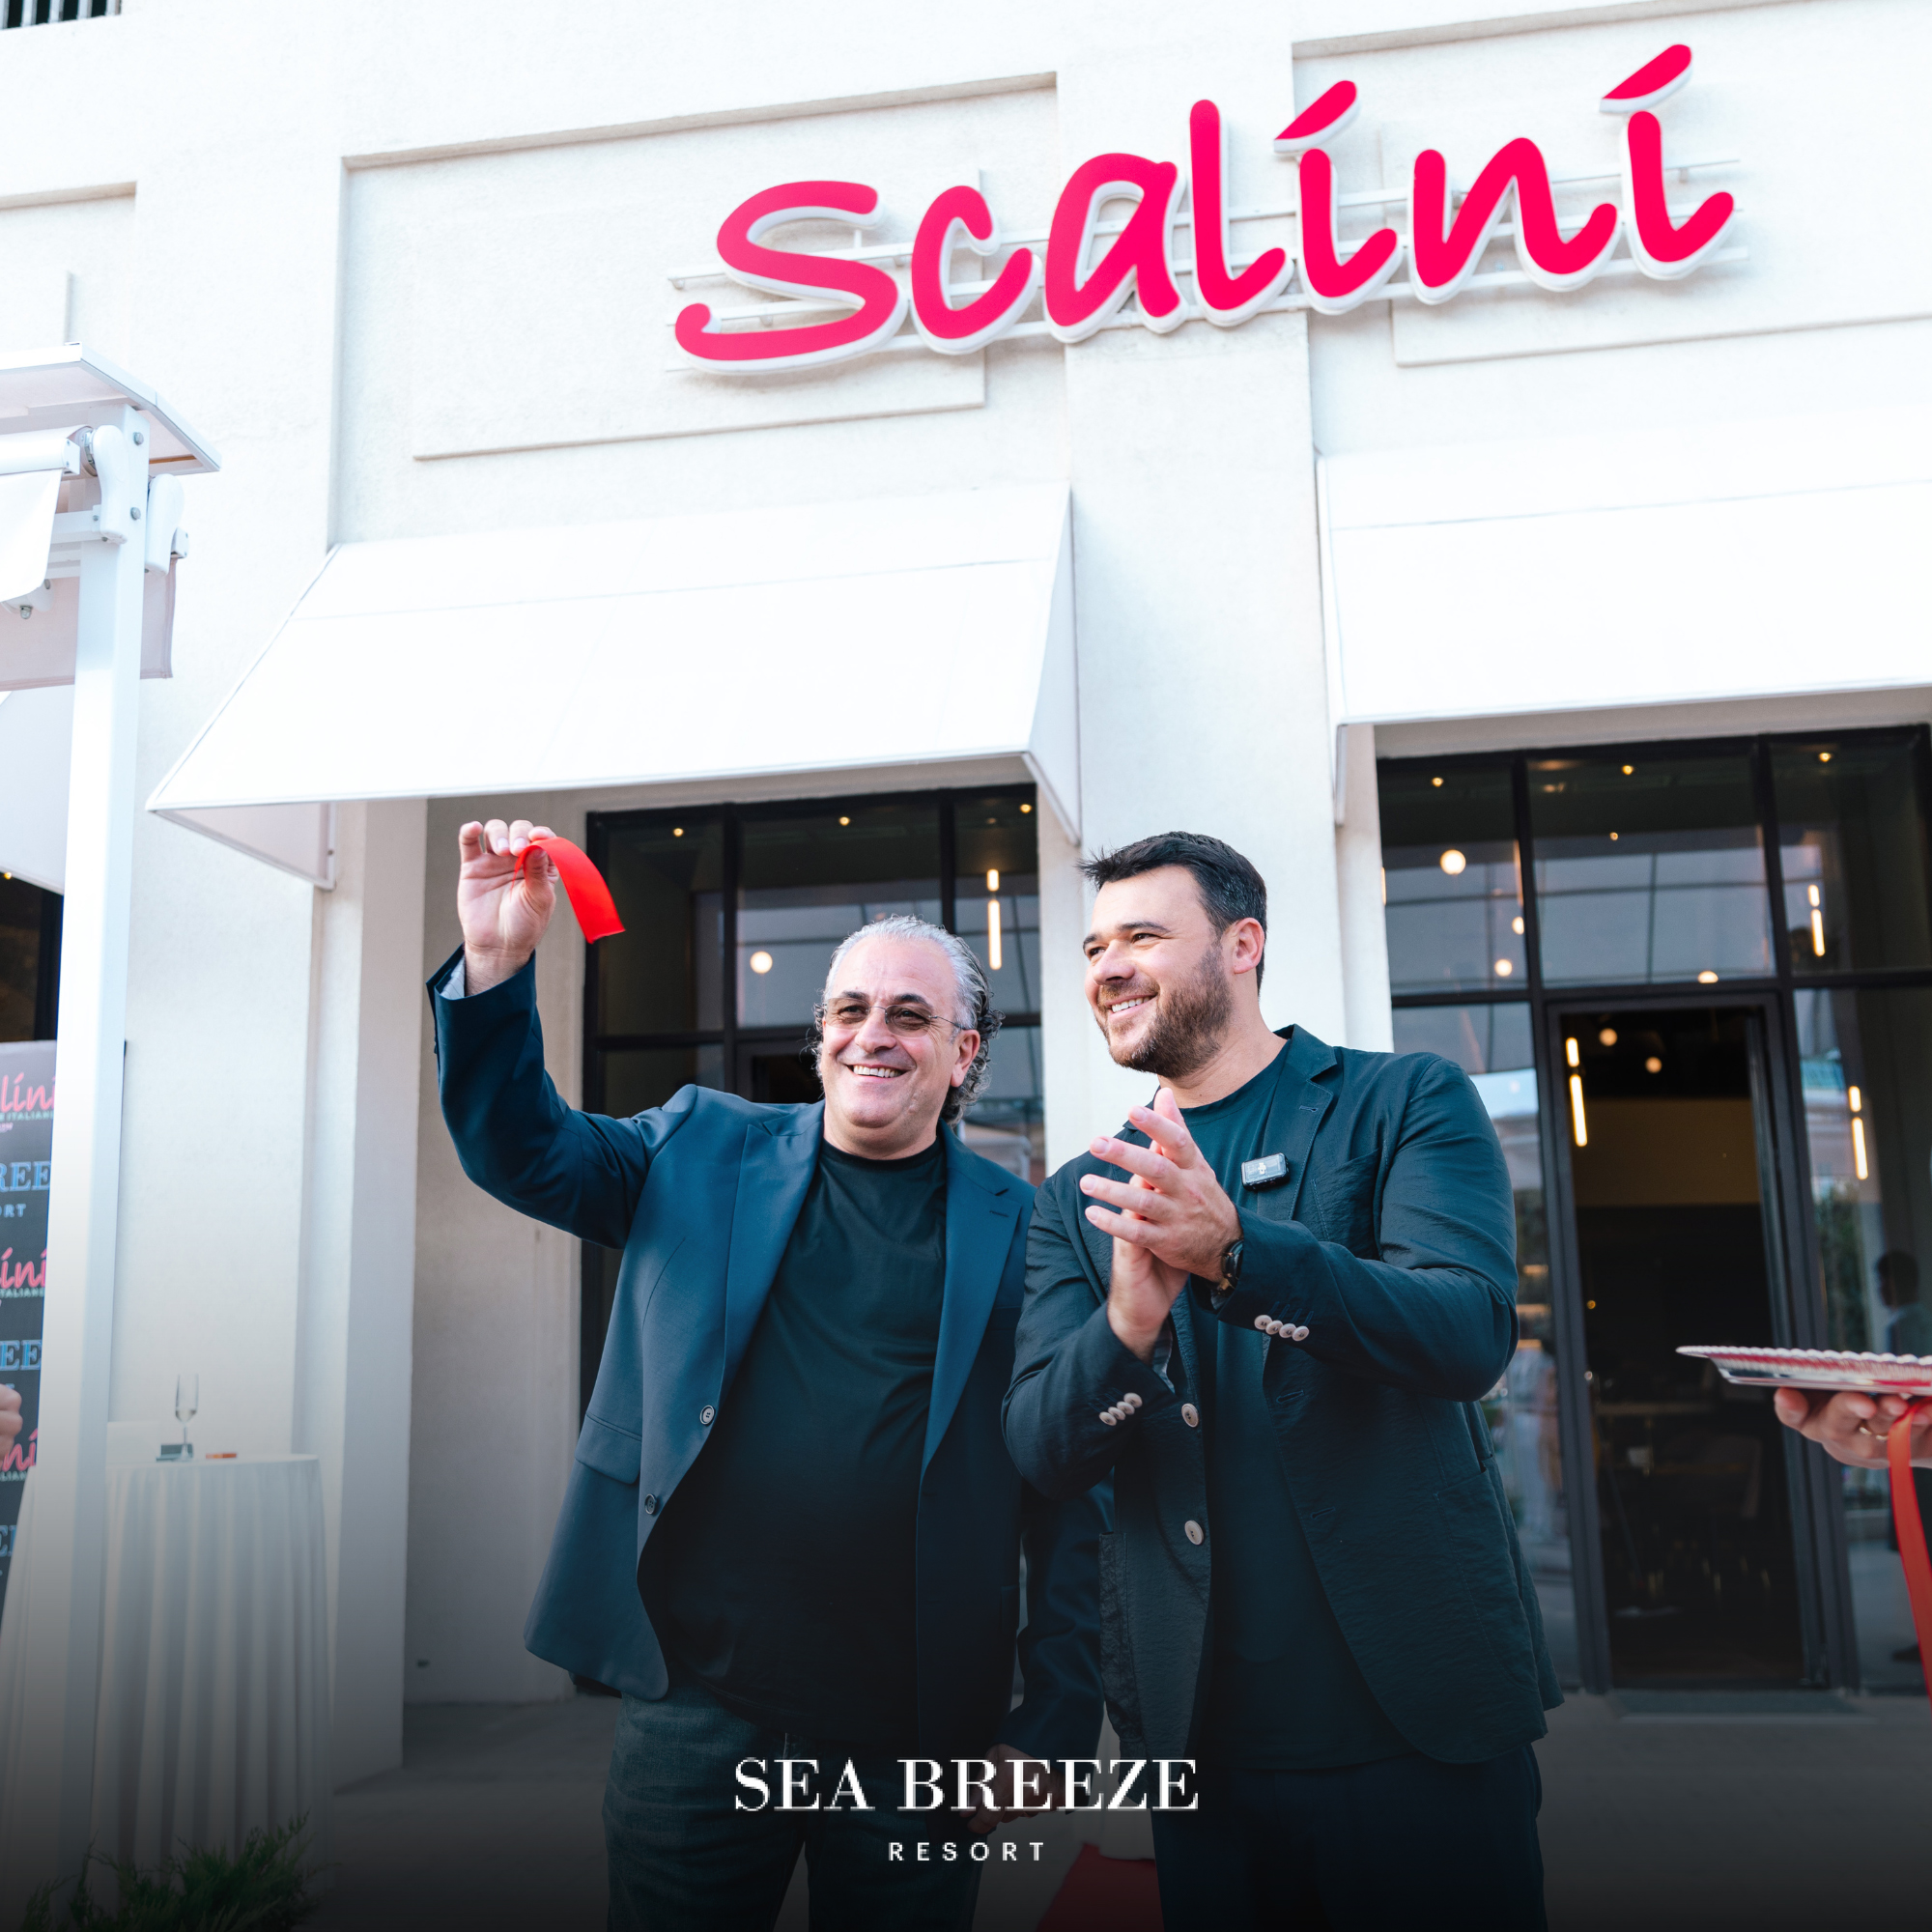 Sea Breeze-də məşhur Scalini şəbəkəsinə aid restoran açıldı